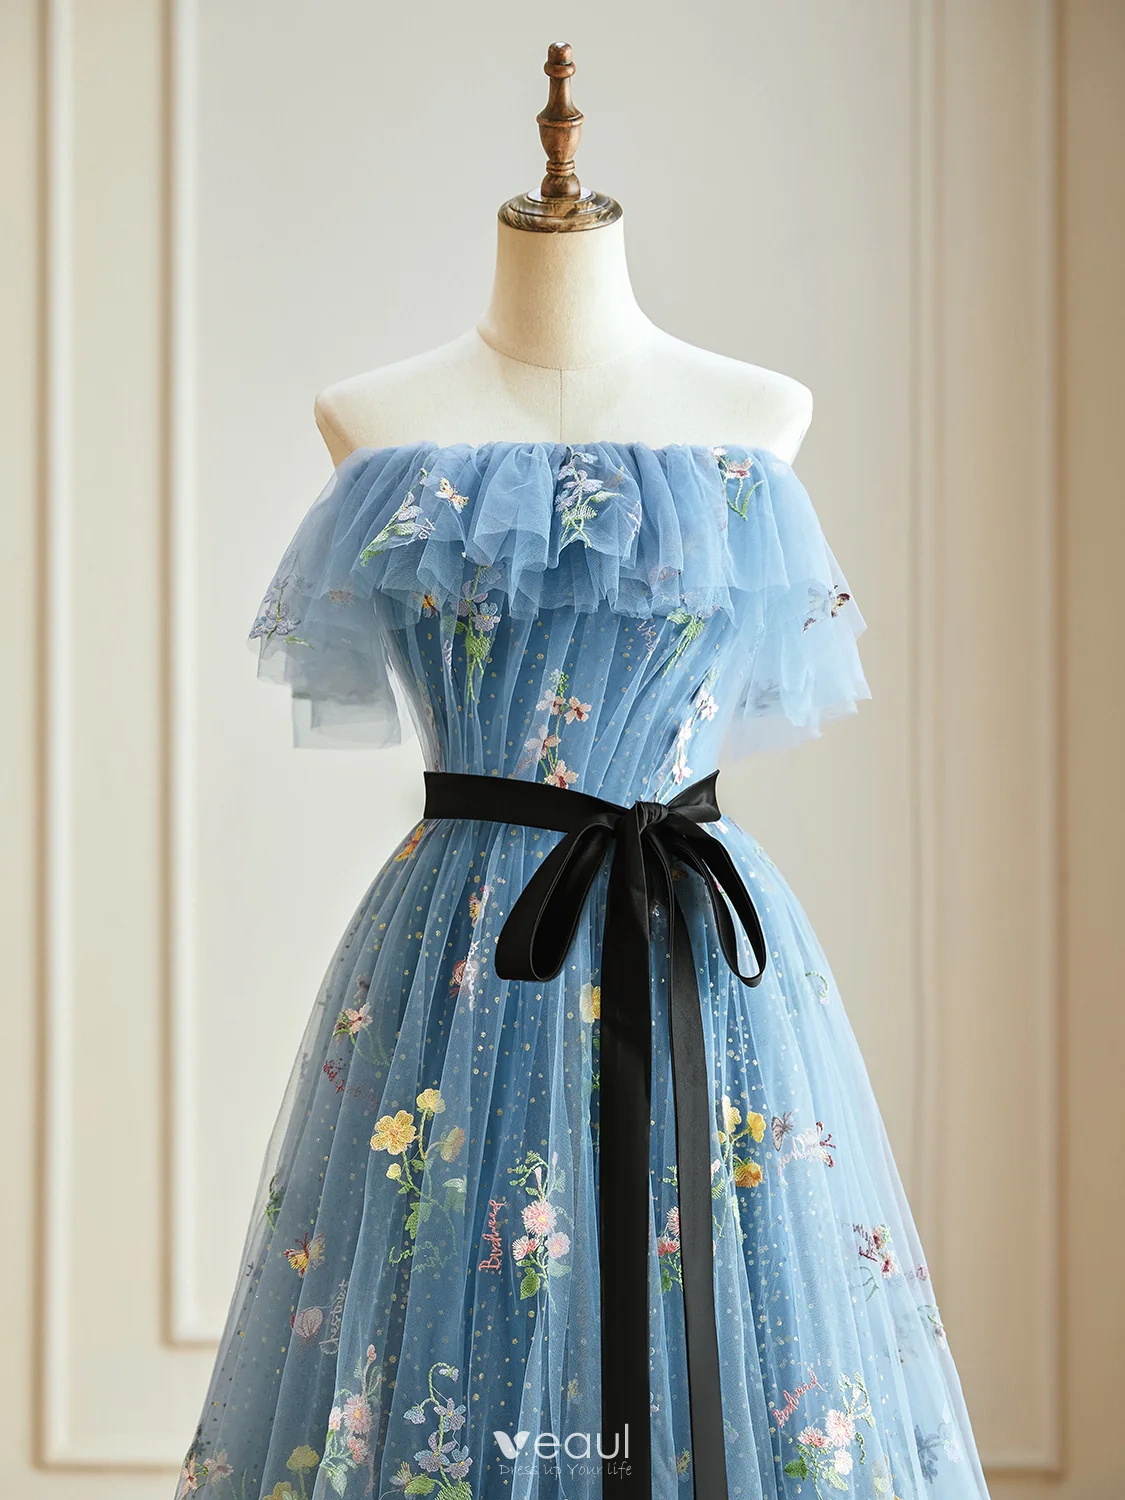 Elegant Flower Fairy Costume | Coolest DIY Costumes